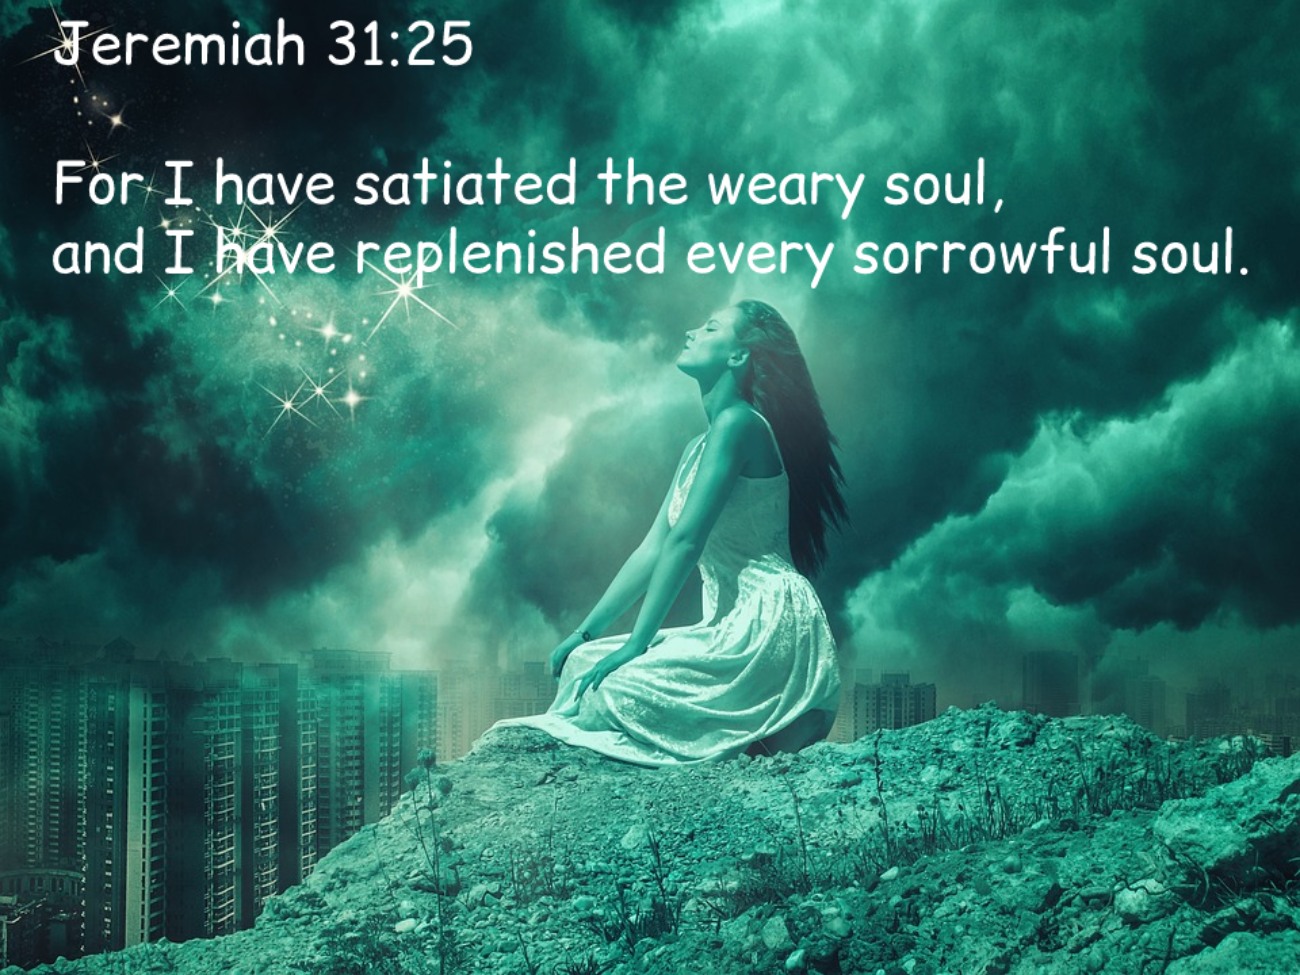 Jeremiah 31:25